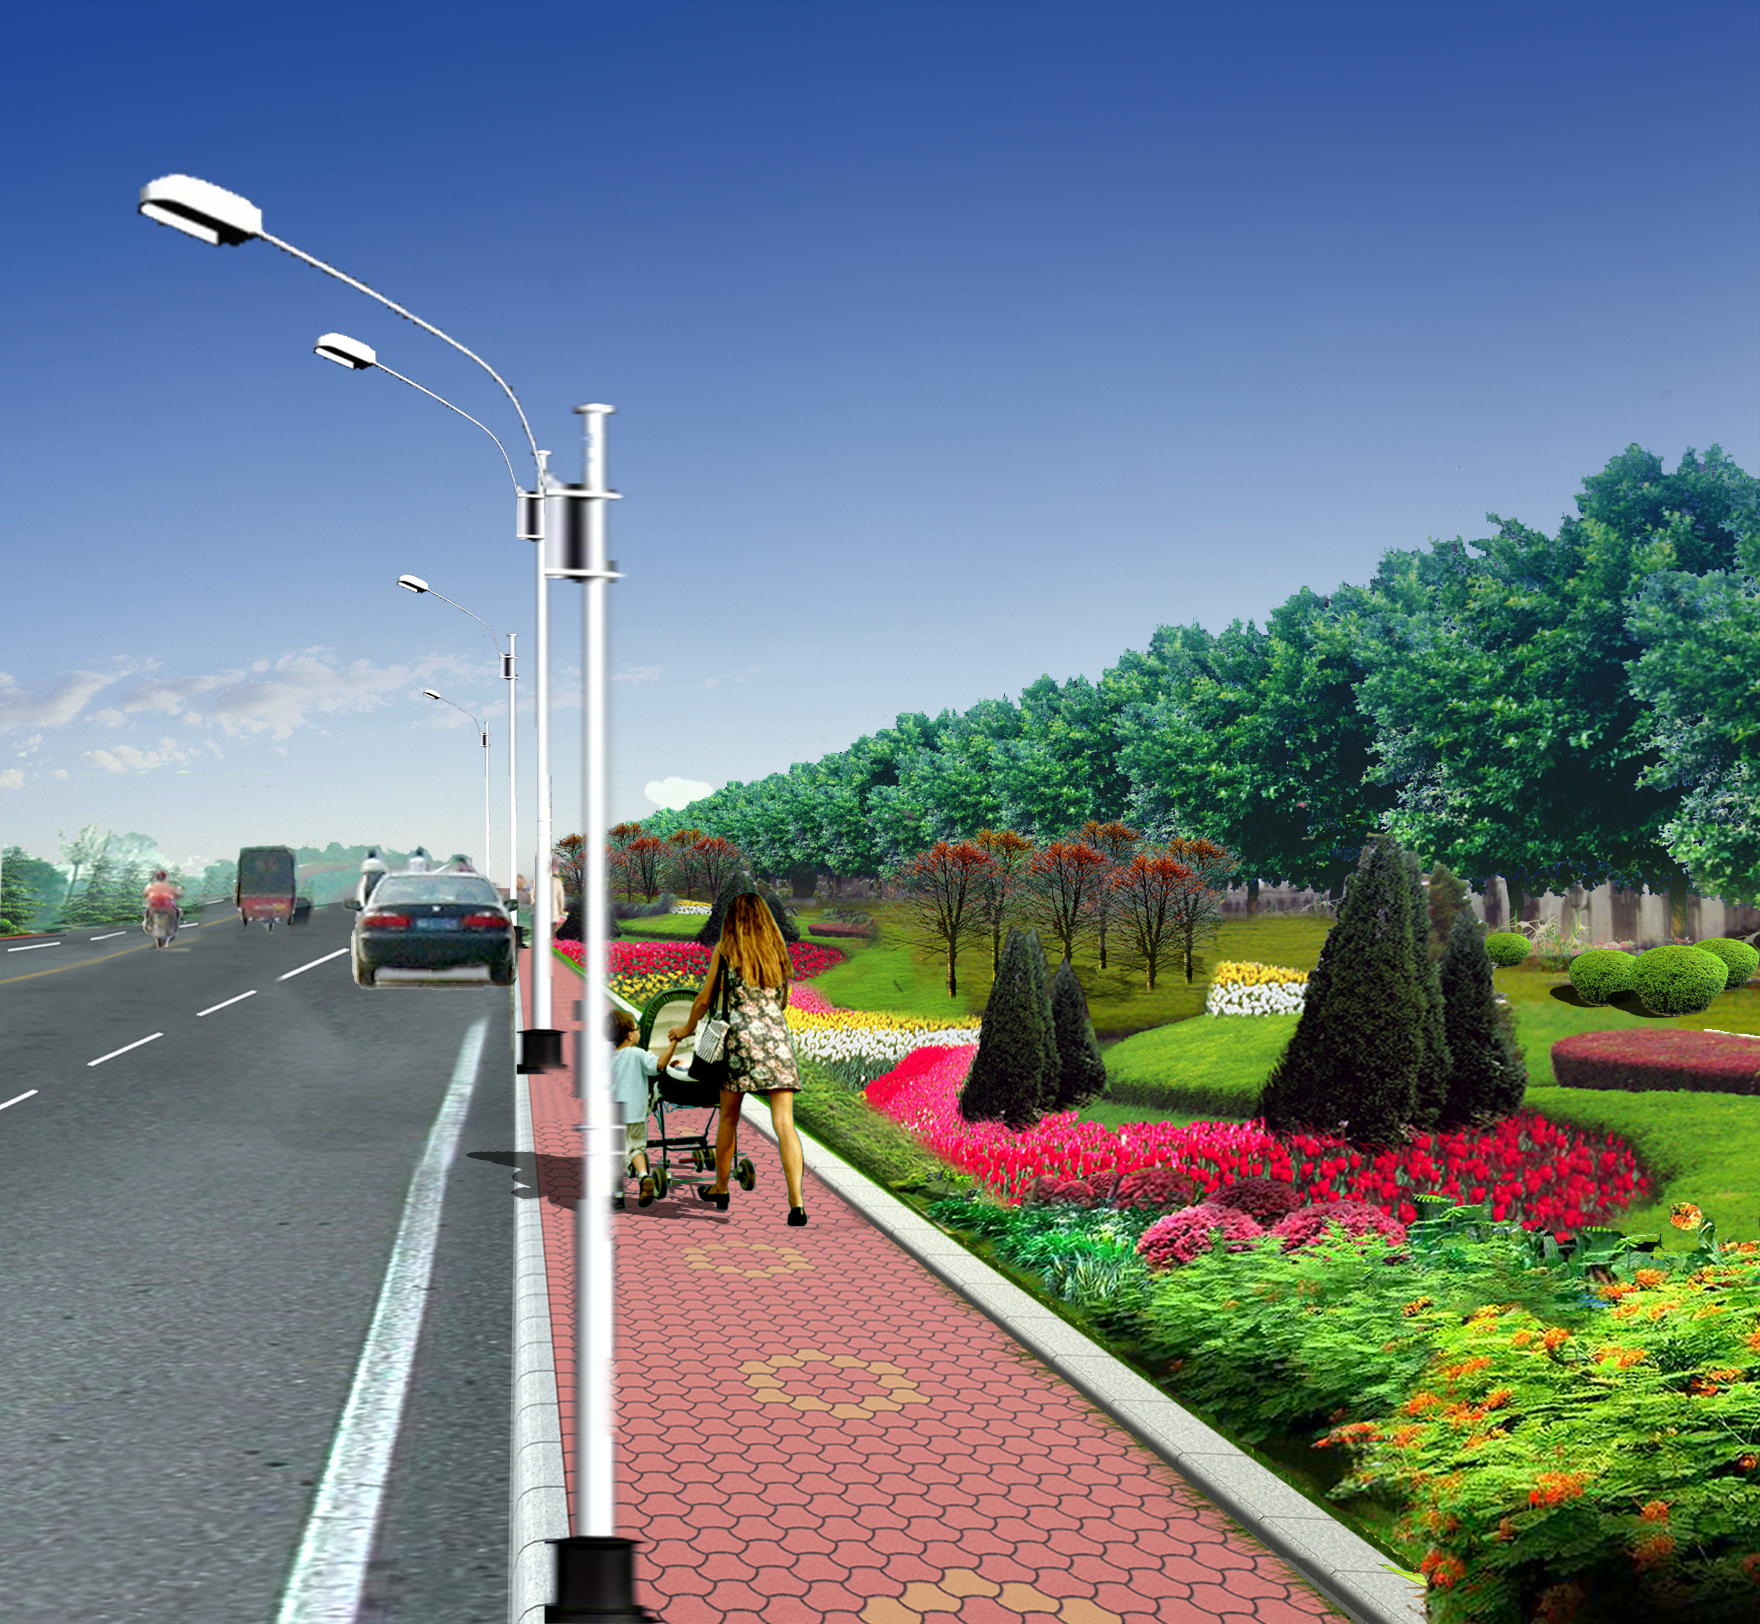 效果图  霸州道路绿化  相关专题:装修效果图 效果图 小高层效果图